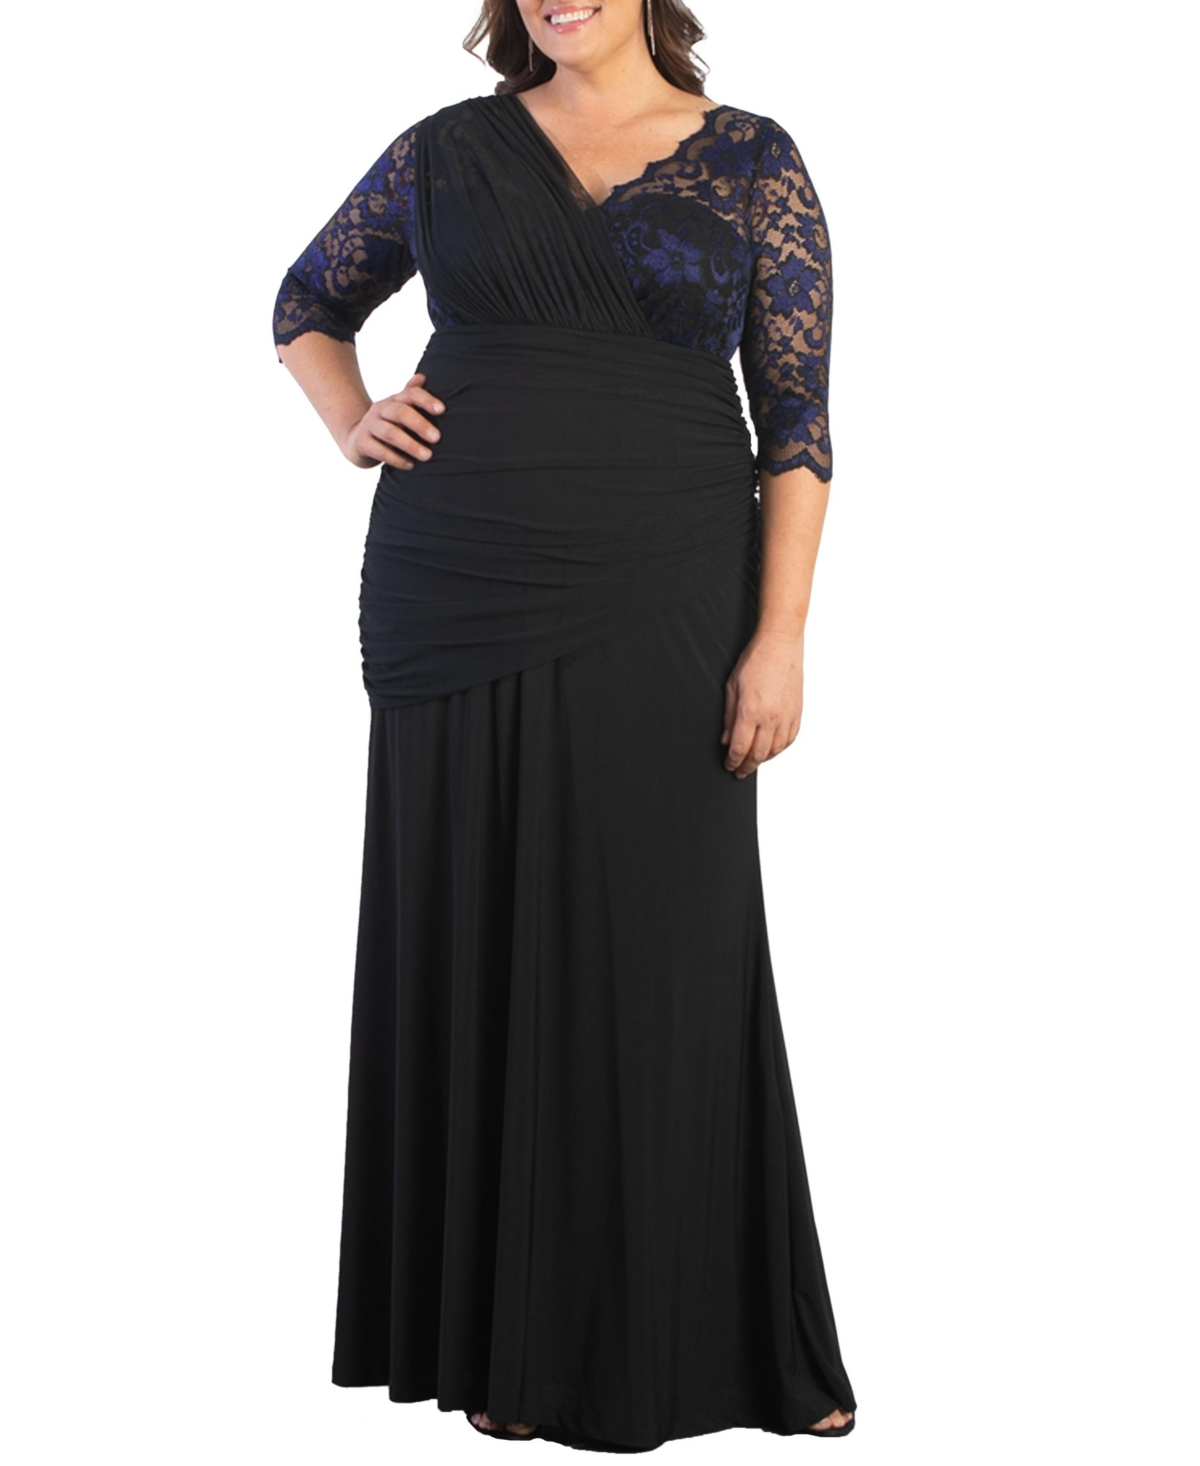 Plus Size Soiree Draped Evening Gown - Violet noir